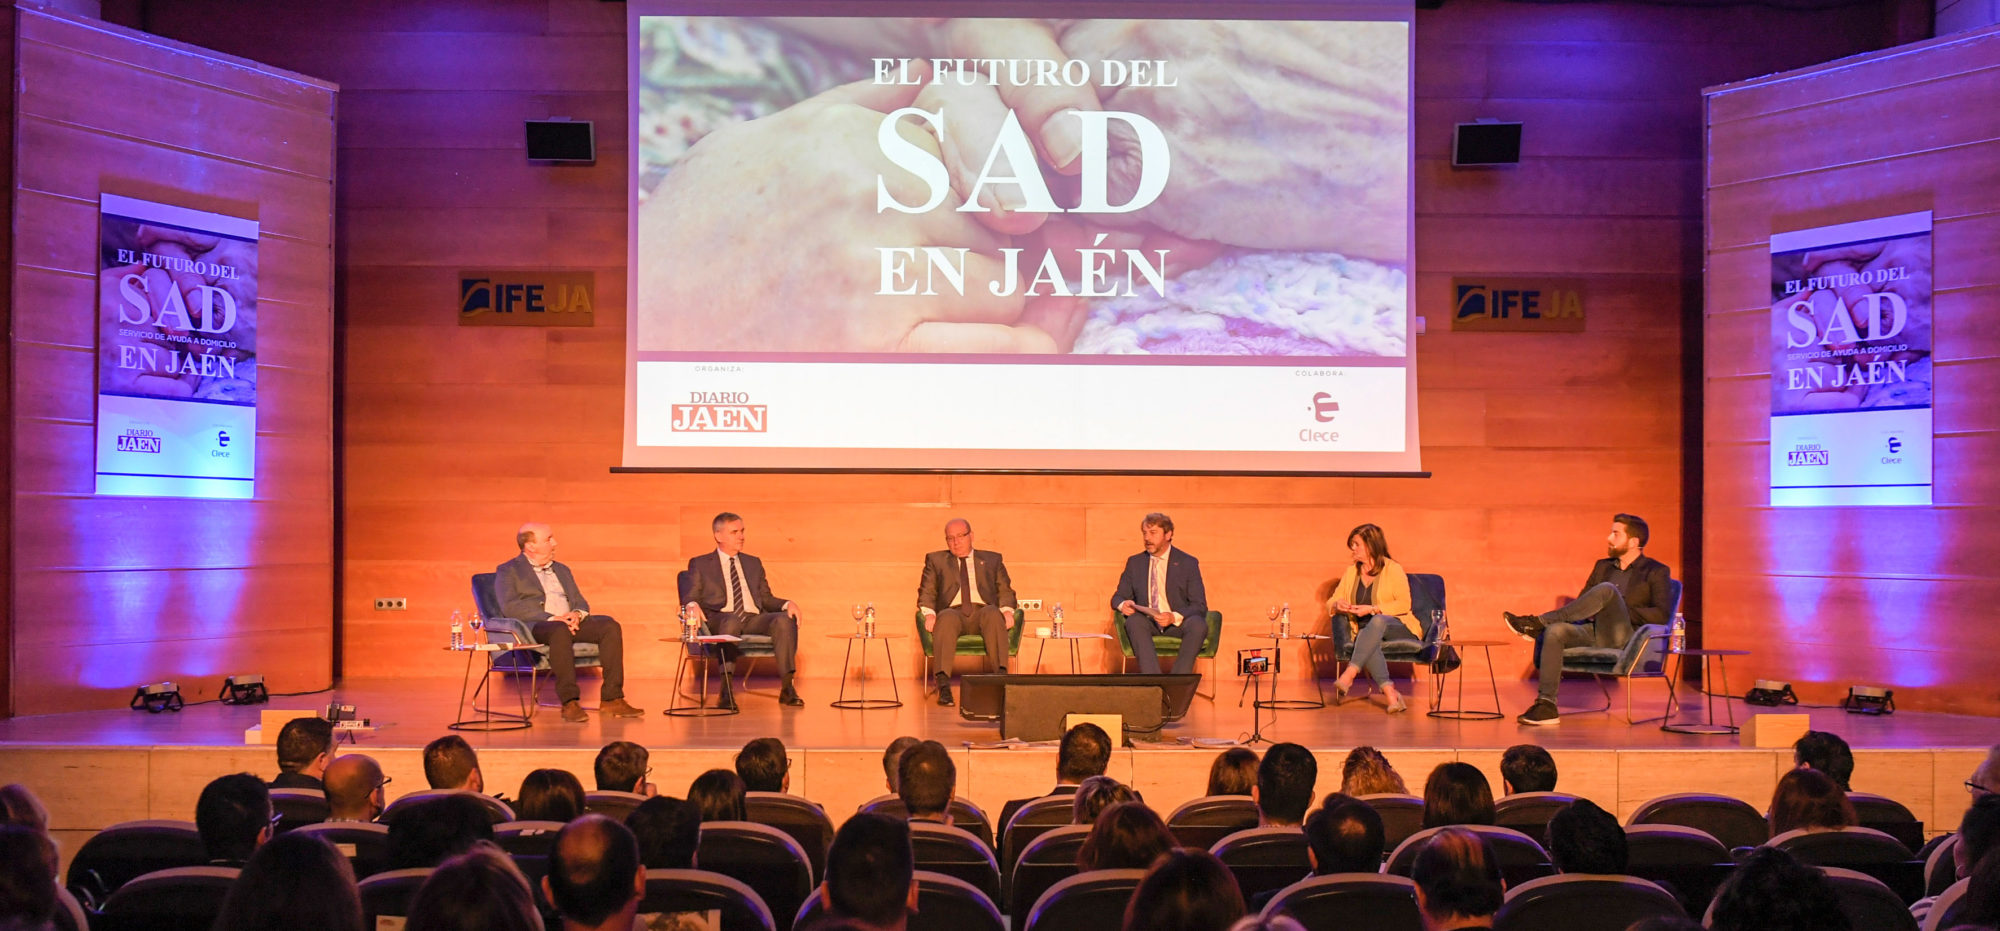 Maior financiamento e dignificação do sector, alguns desafios do futuro do SAD debatidos no Fórum de Jaén